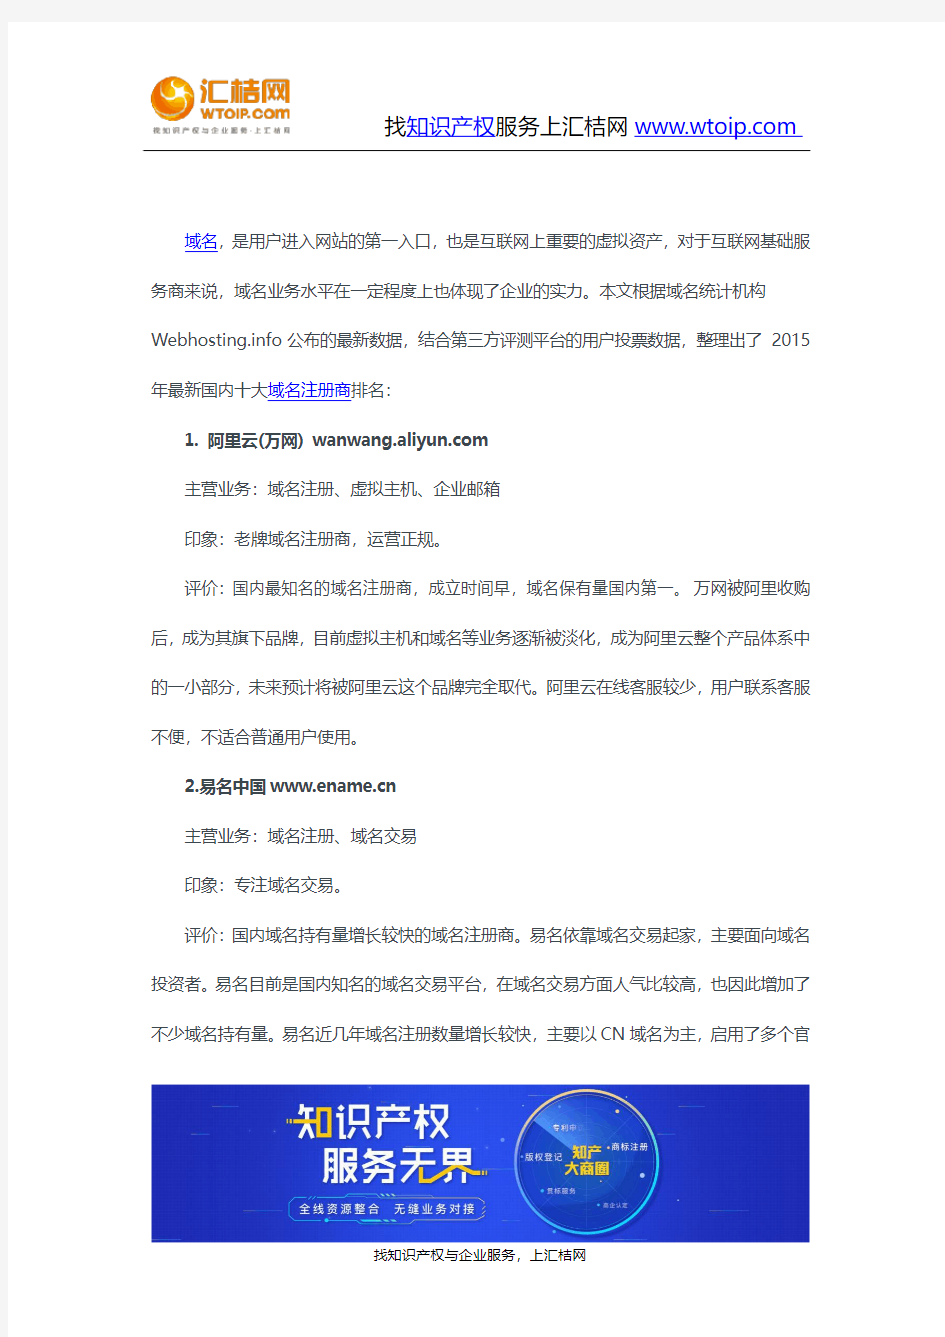 中国十大域名注册商排名